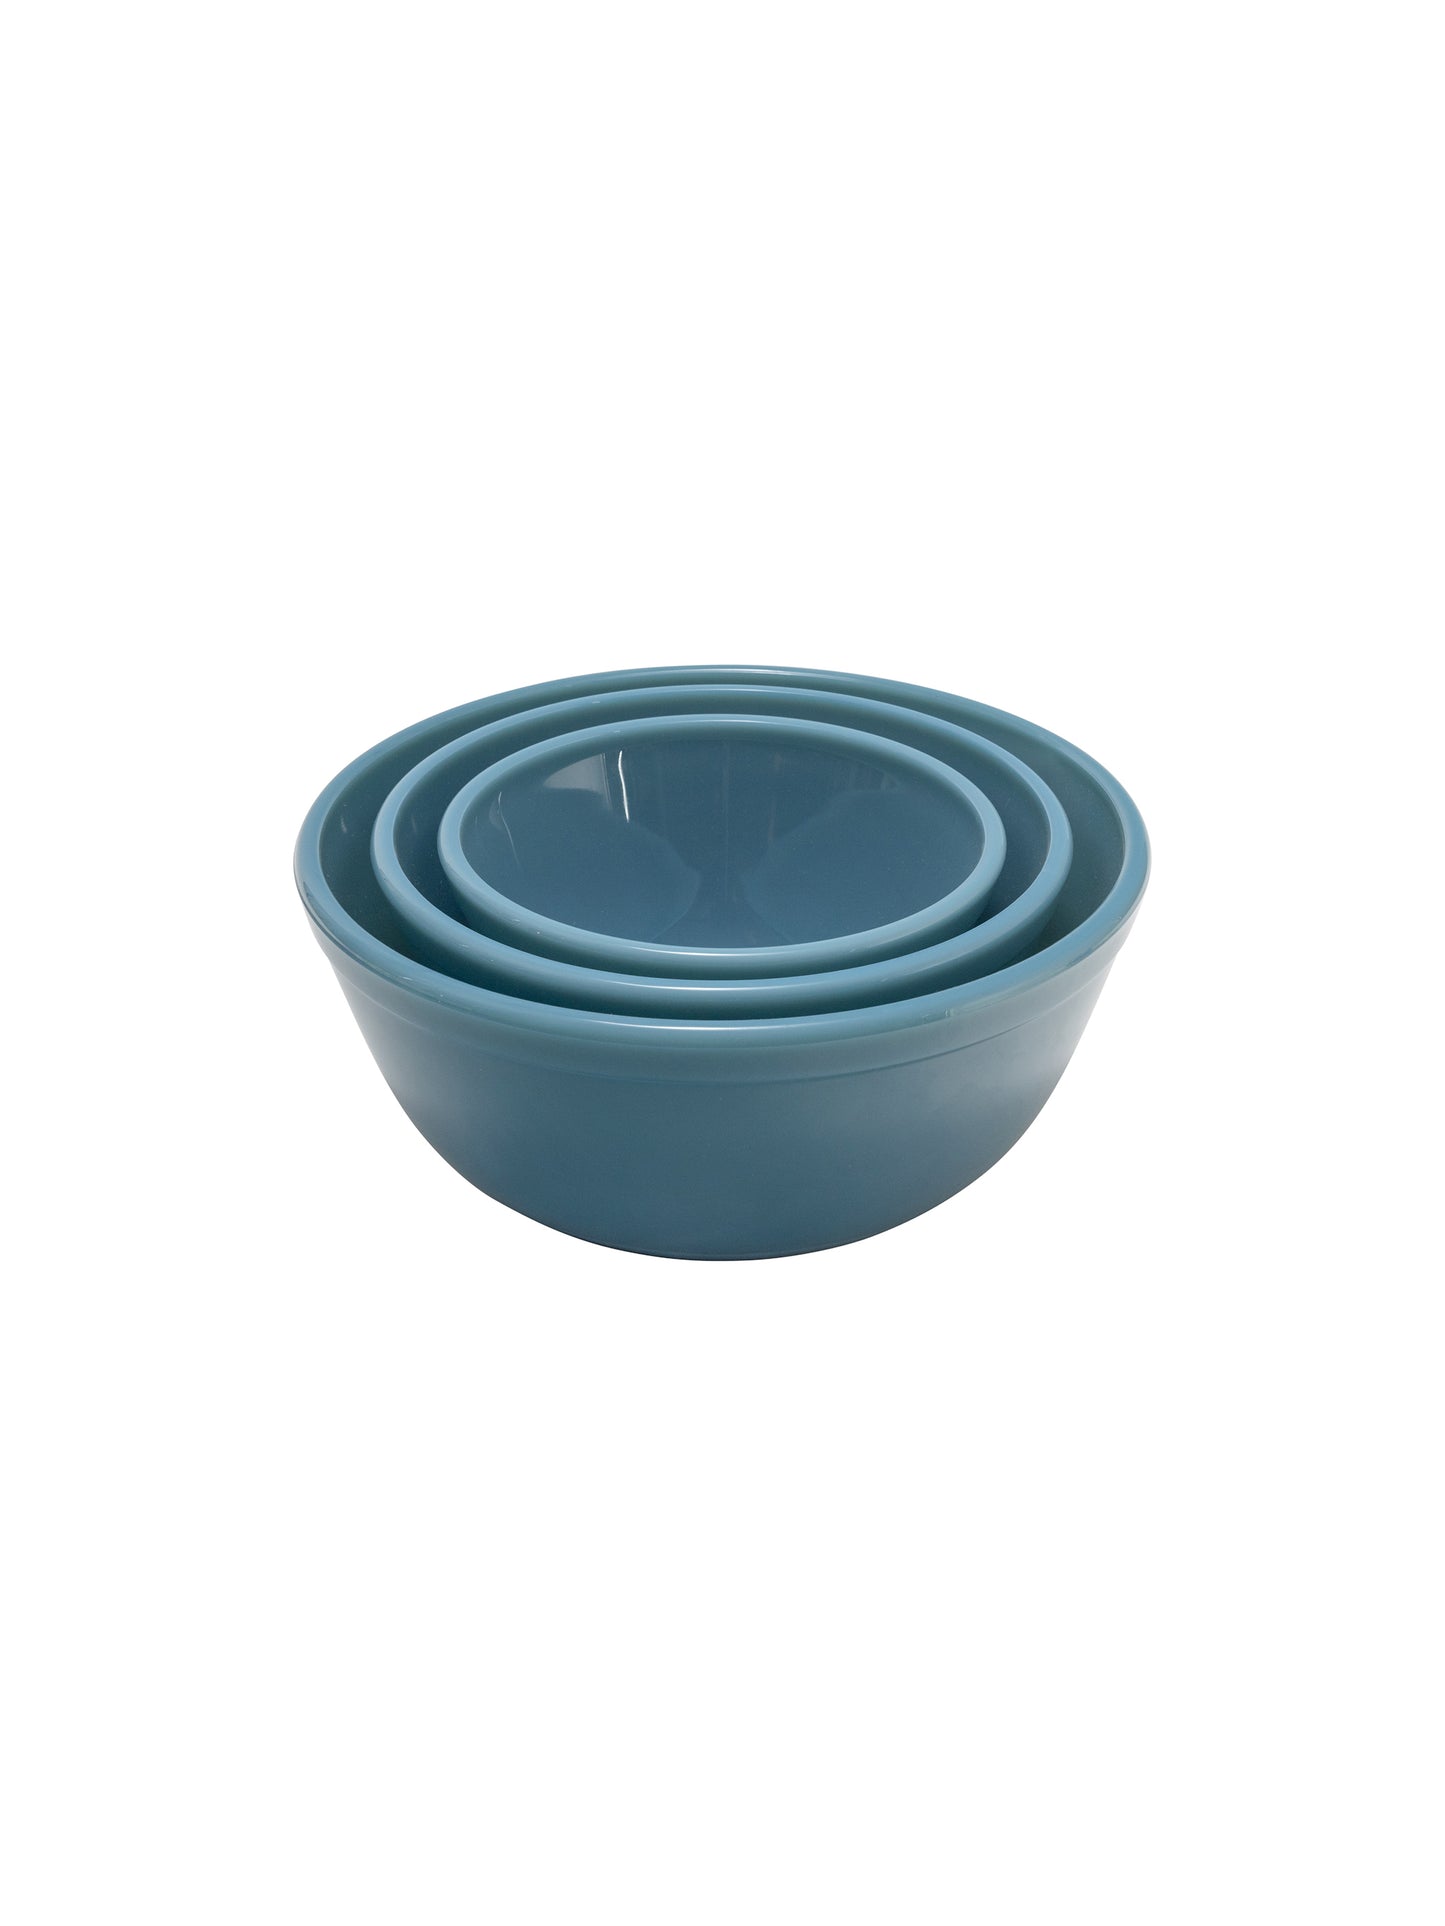 Mosser Glass 3-Piece Mixing Bowl Set - Georgia Blue